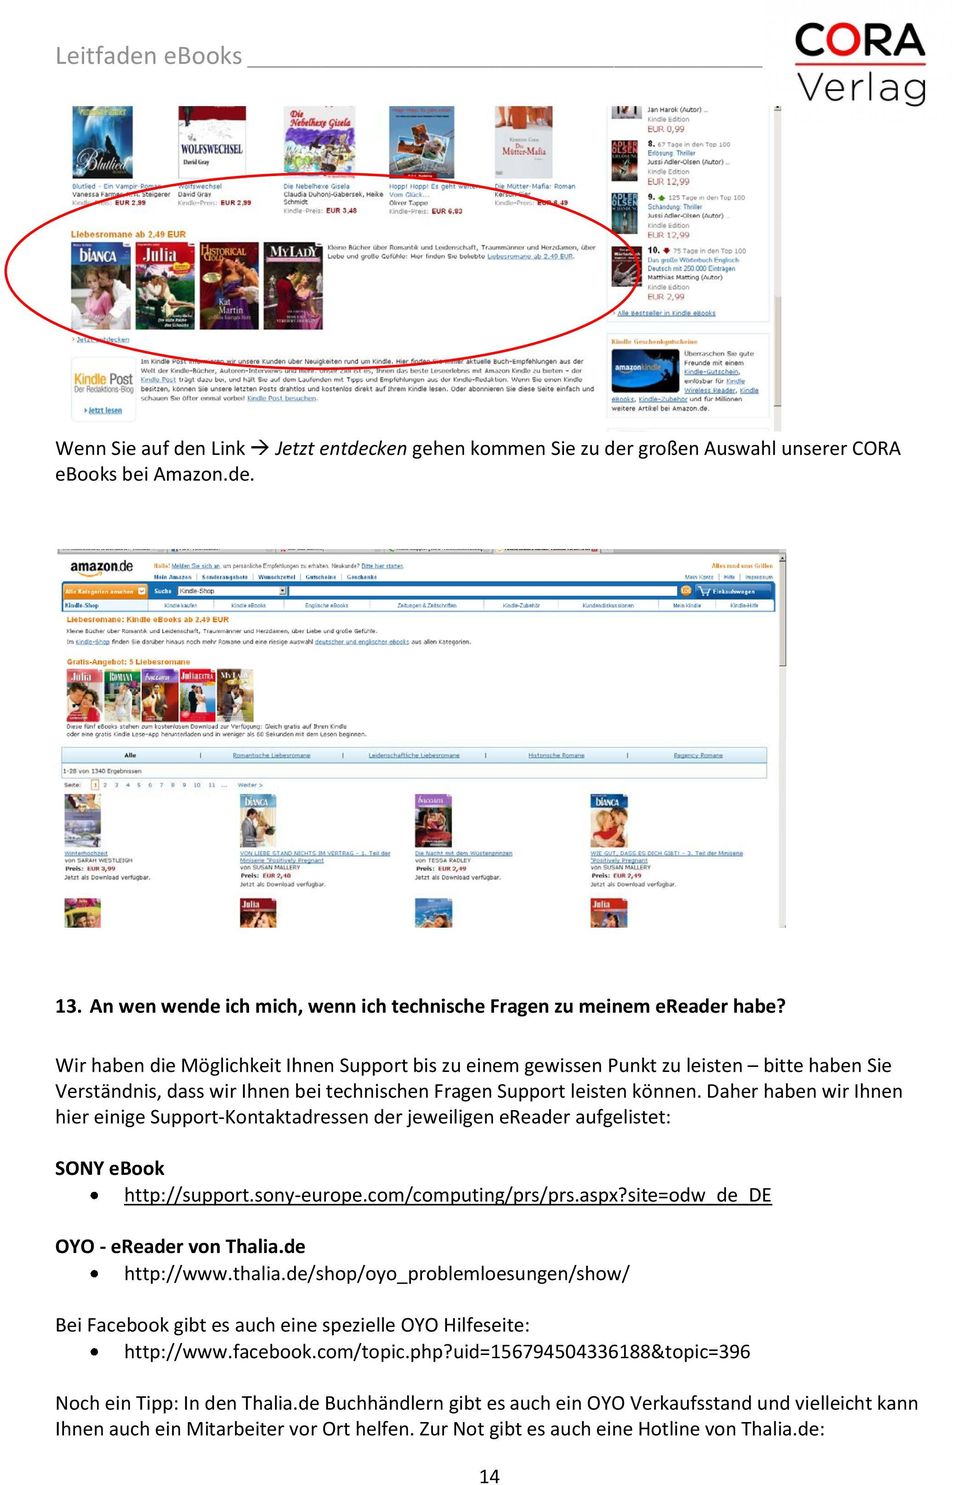 Daher haben wir Ihnen hier einige Support Kontaktadressen der jeweiligen ereader aufgelistet: SONY ebook http://support.sony europe.com/computing/prs/prs.aspx?site=odw_de_de OYO ereader von Thalia.